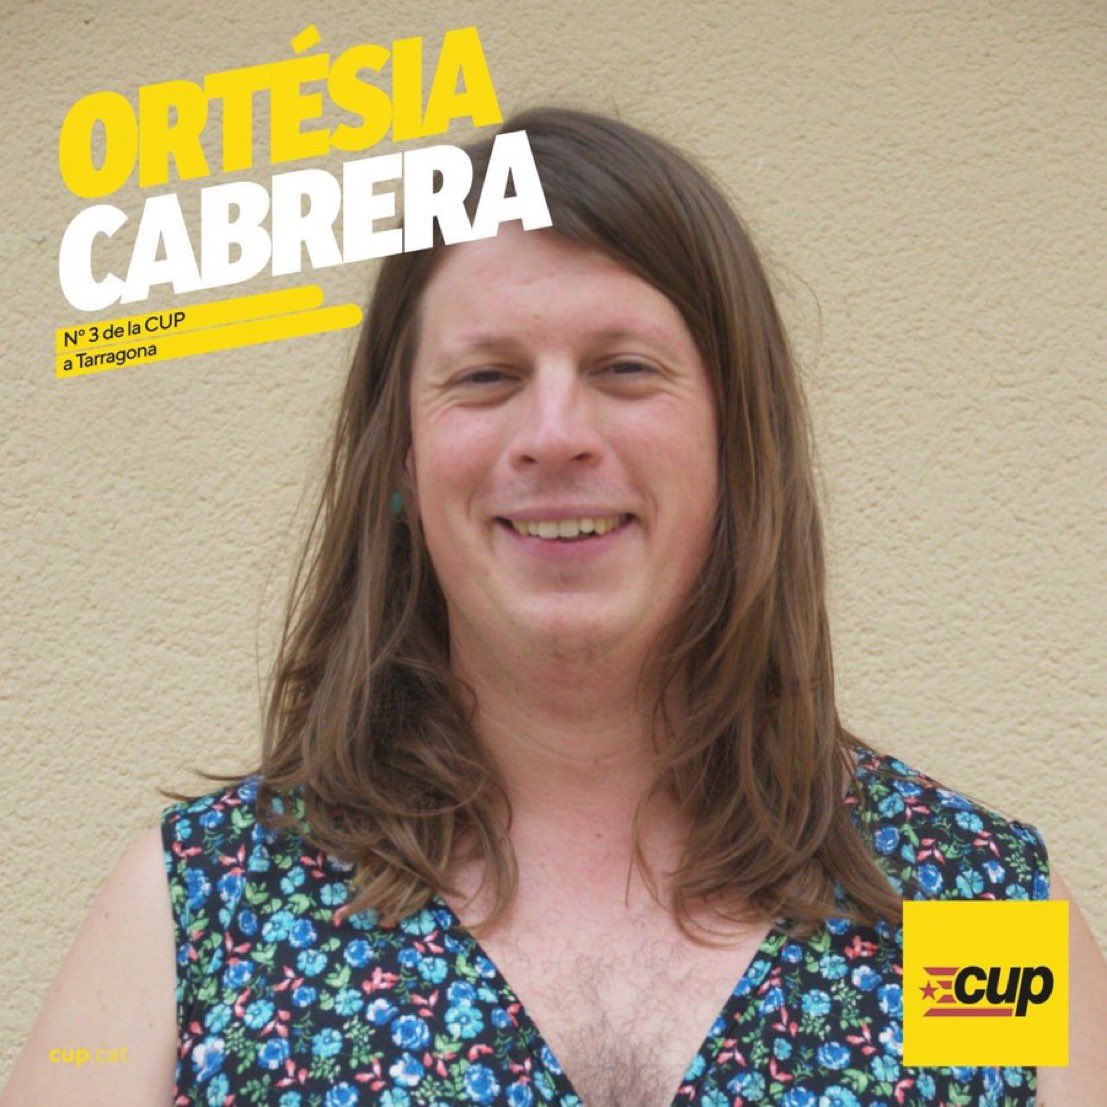 Sabéis que soy una socialista convencida, pero quiero mostrar mi apoyo a Ortesia Cabrera de la CUP, quien será una gran Consejera de Infancia y Familia. 🚸La educación de les niñes catalans está asegurada con ella